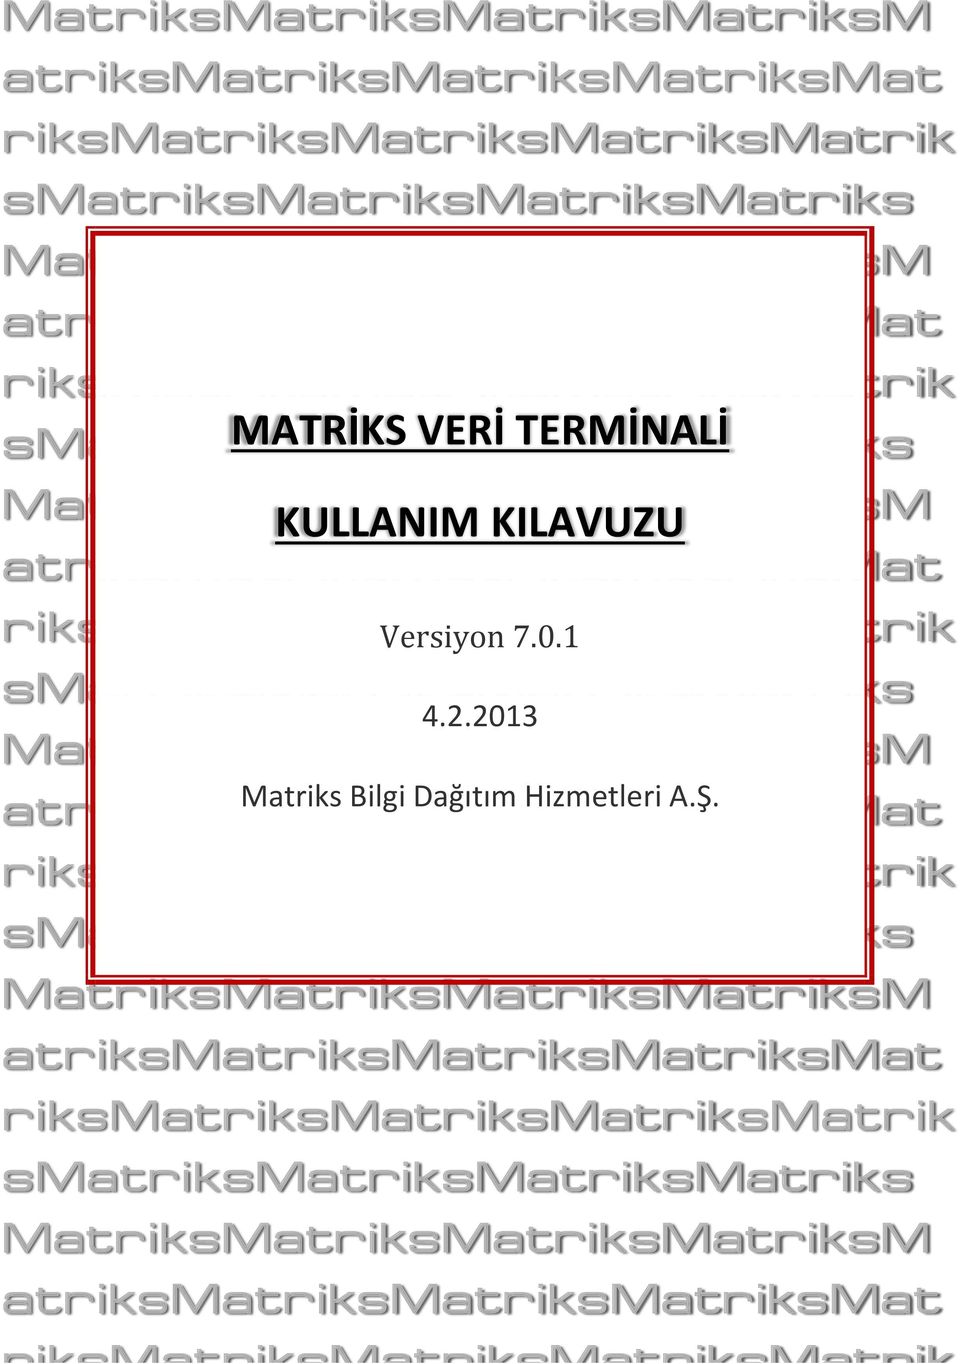 riksmatriksmatriksmatriksmatrik Versiyon 7.0.1 smatriksmatriksmatriksmatriks 4.2.2013 MatriksMatriksMatriksMatriksM Matriks Bilgi Dağıtım Hizmetleri A.Ş.